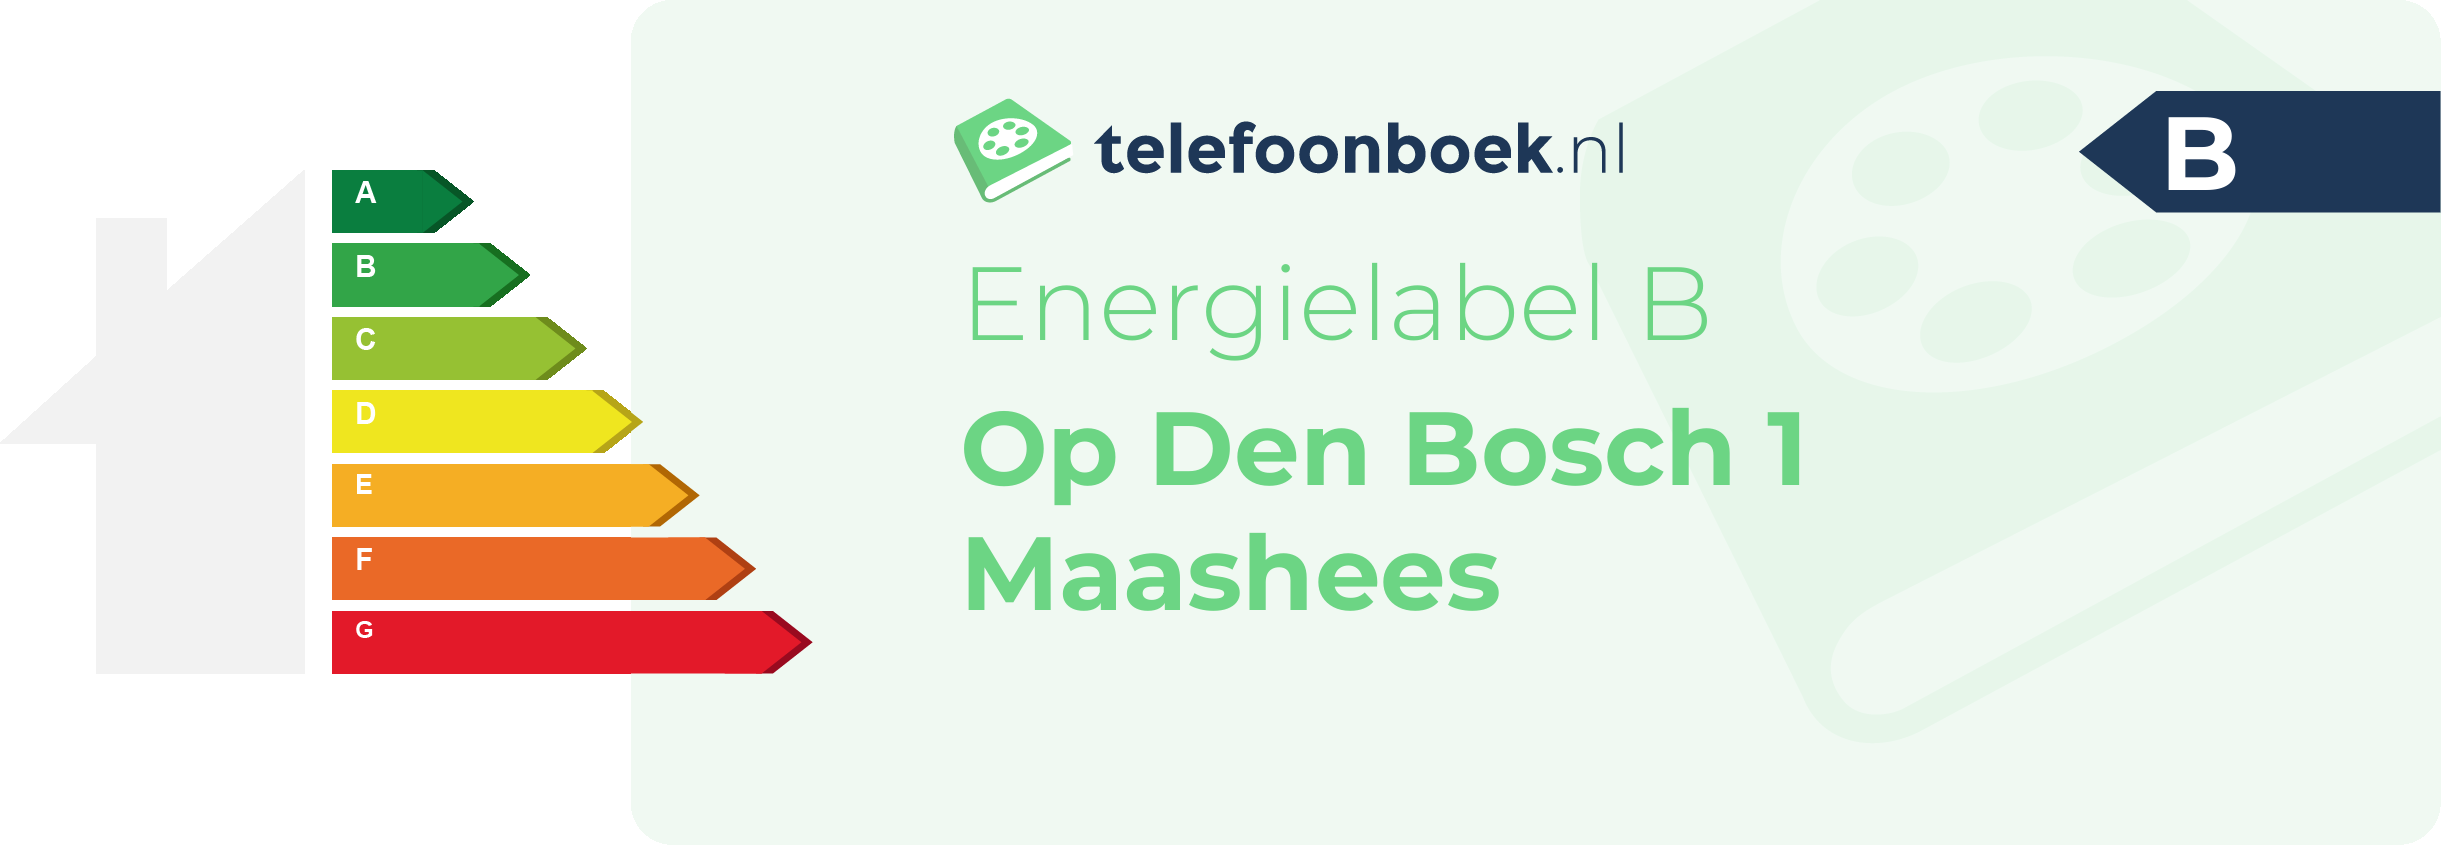 Energielabel Op Den Bosch 1 Maashees